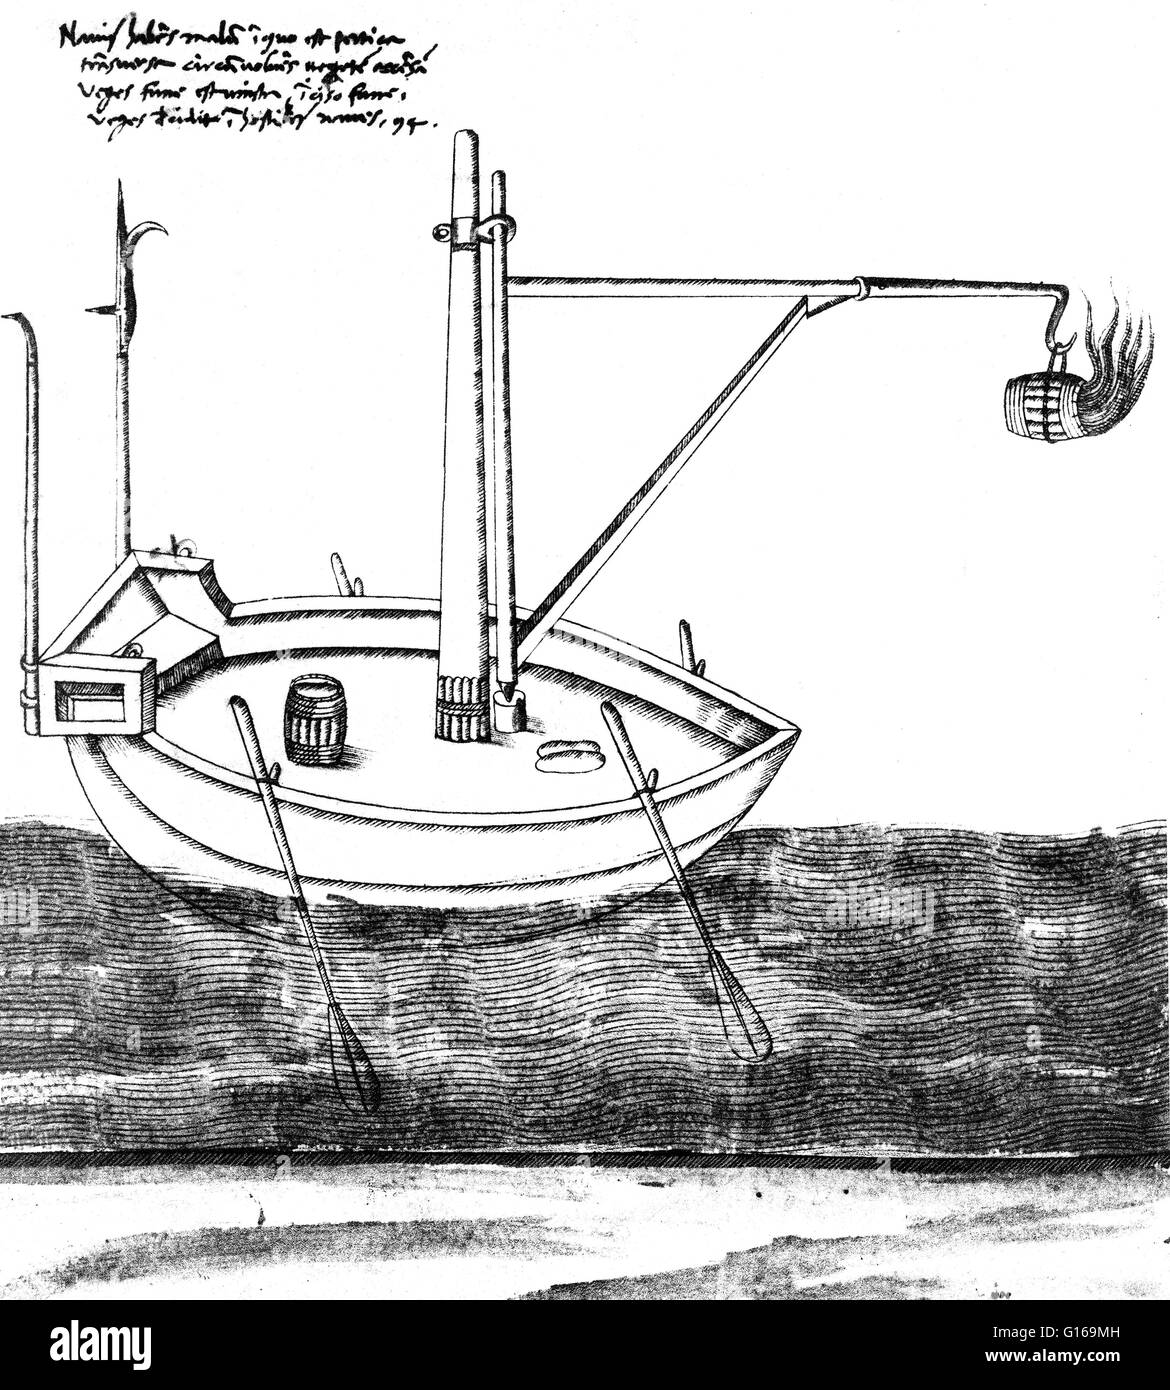 Barca con Lanciafiamme progettato da Taccola, del XV secolo. Design per imbarcazione equipaggiata con fiamma thrower da Taccola. Mariano di Jacopo detto il Taccola (1382 - 1453) era un italiano di amministratore, Artista e ingegnere del primo Rinascimento. Egli è conosciuto per il suo il suo tecnologico due trattati, De ingeneis (riguardo ai motori, 1433) e il De machinis (concernente le macchine, 1449), nella quale egli ribadisce molti dei dispositivi dal lungo il processo di sviluppo del suo primo trattato. quale funzione annotato con disegni di una vasta gamma di macchine innovative e dispositivi. Egli è noto per aver aderito al Foto Stock